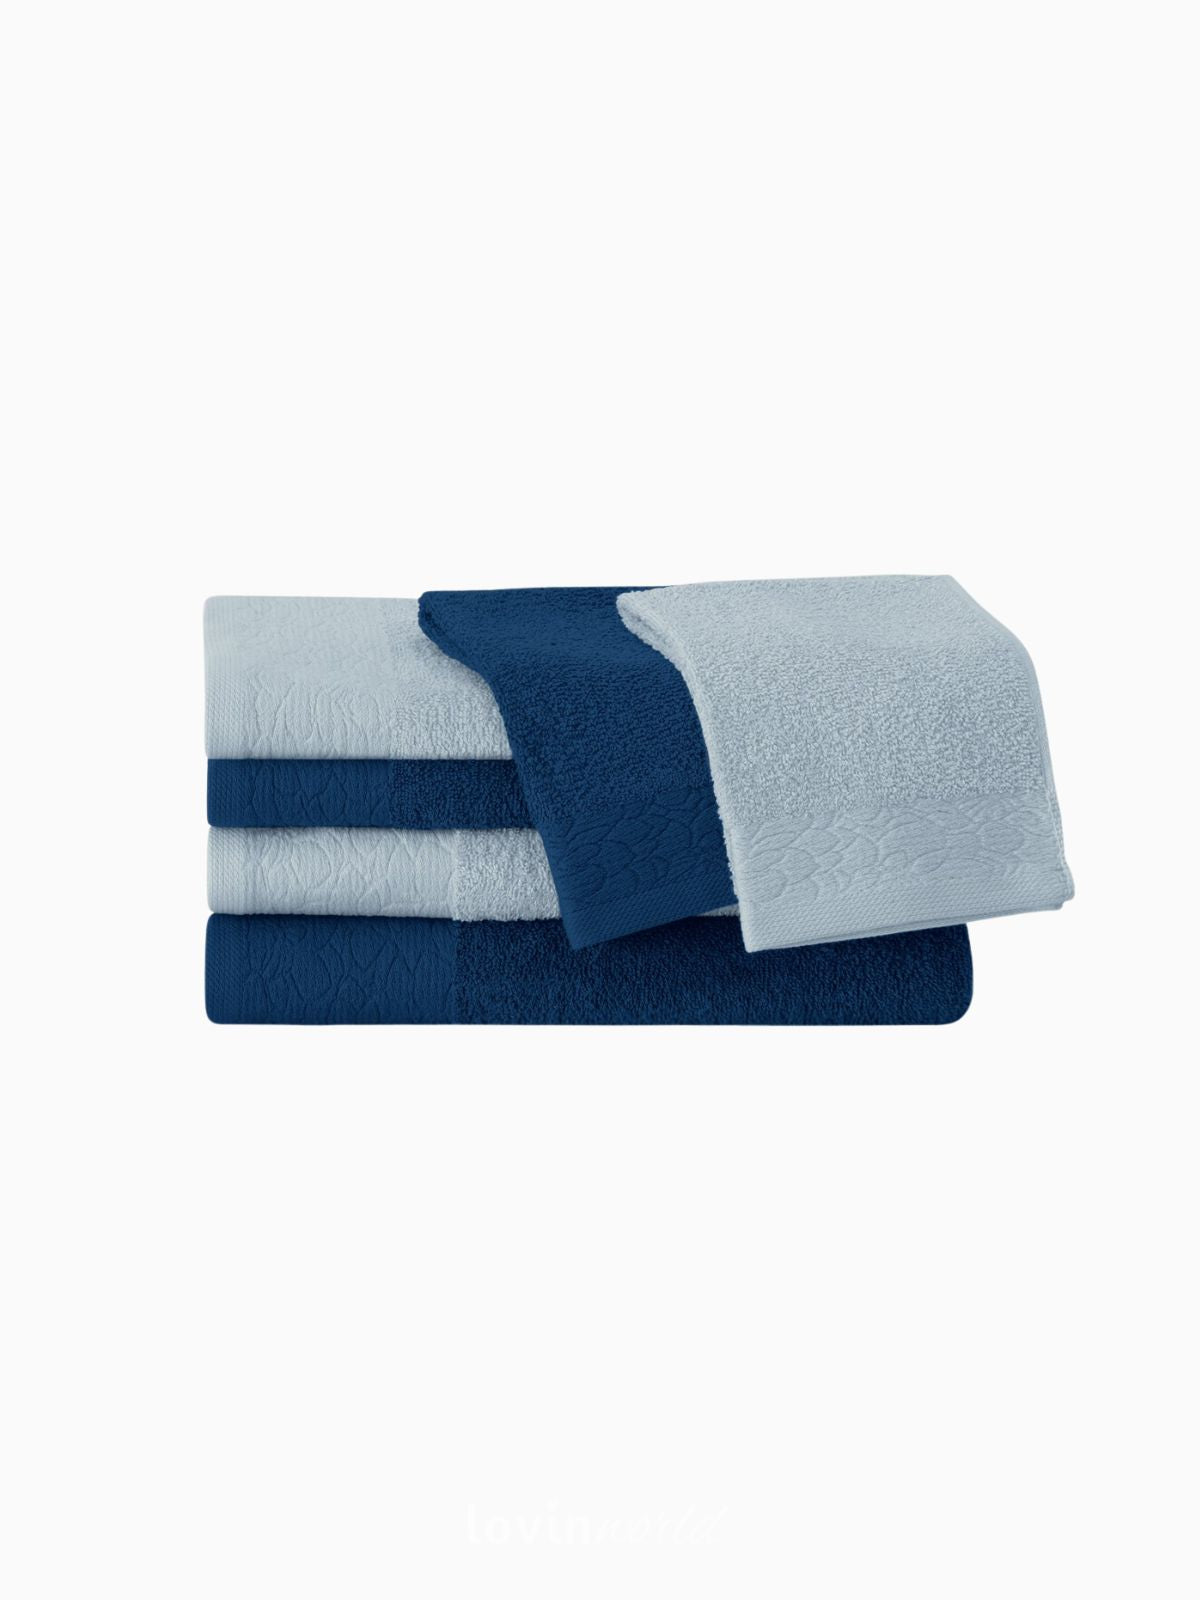 Set 6 Asciugamani da bagno Flos in 100% cotone, colore blu e celeste-2